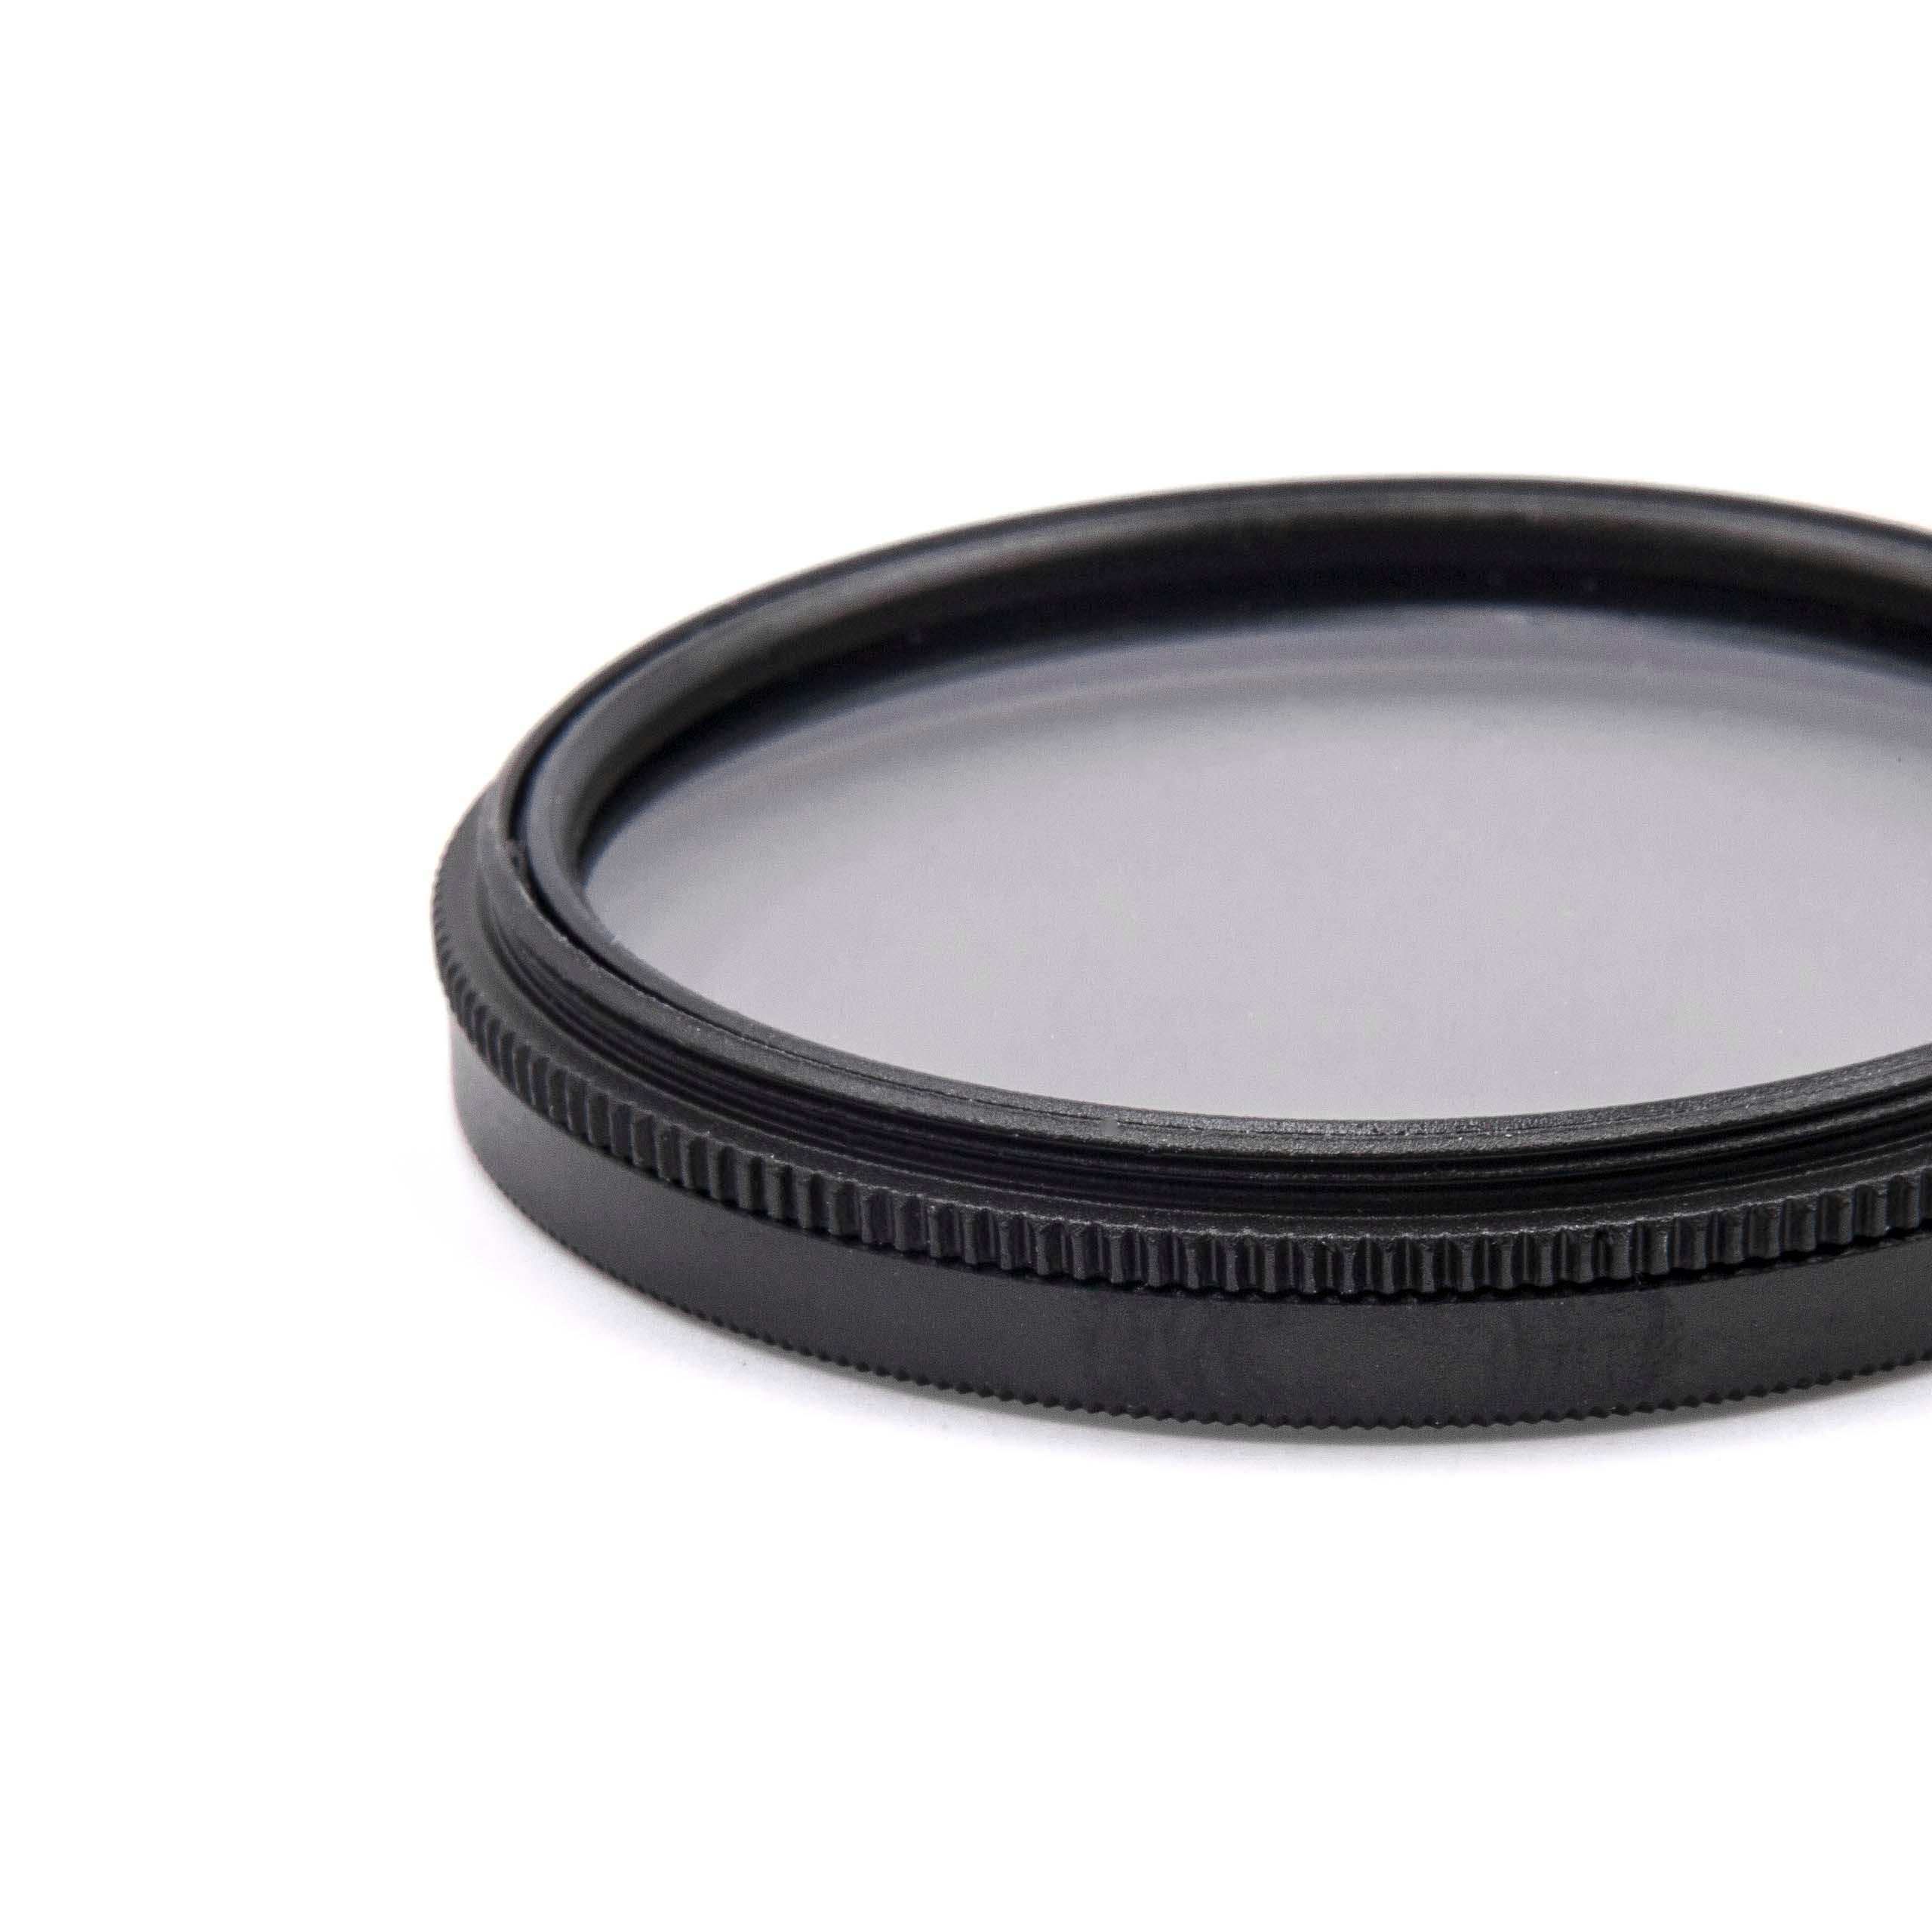 Filtr polaryzacyjny 49mm do różnych obiektywów aparatów - filtr CPL 